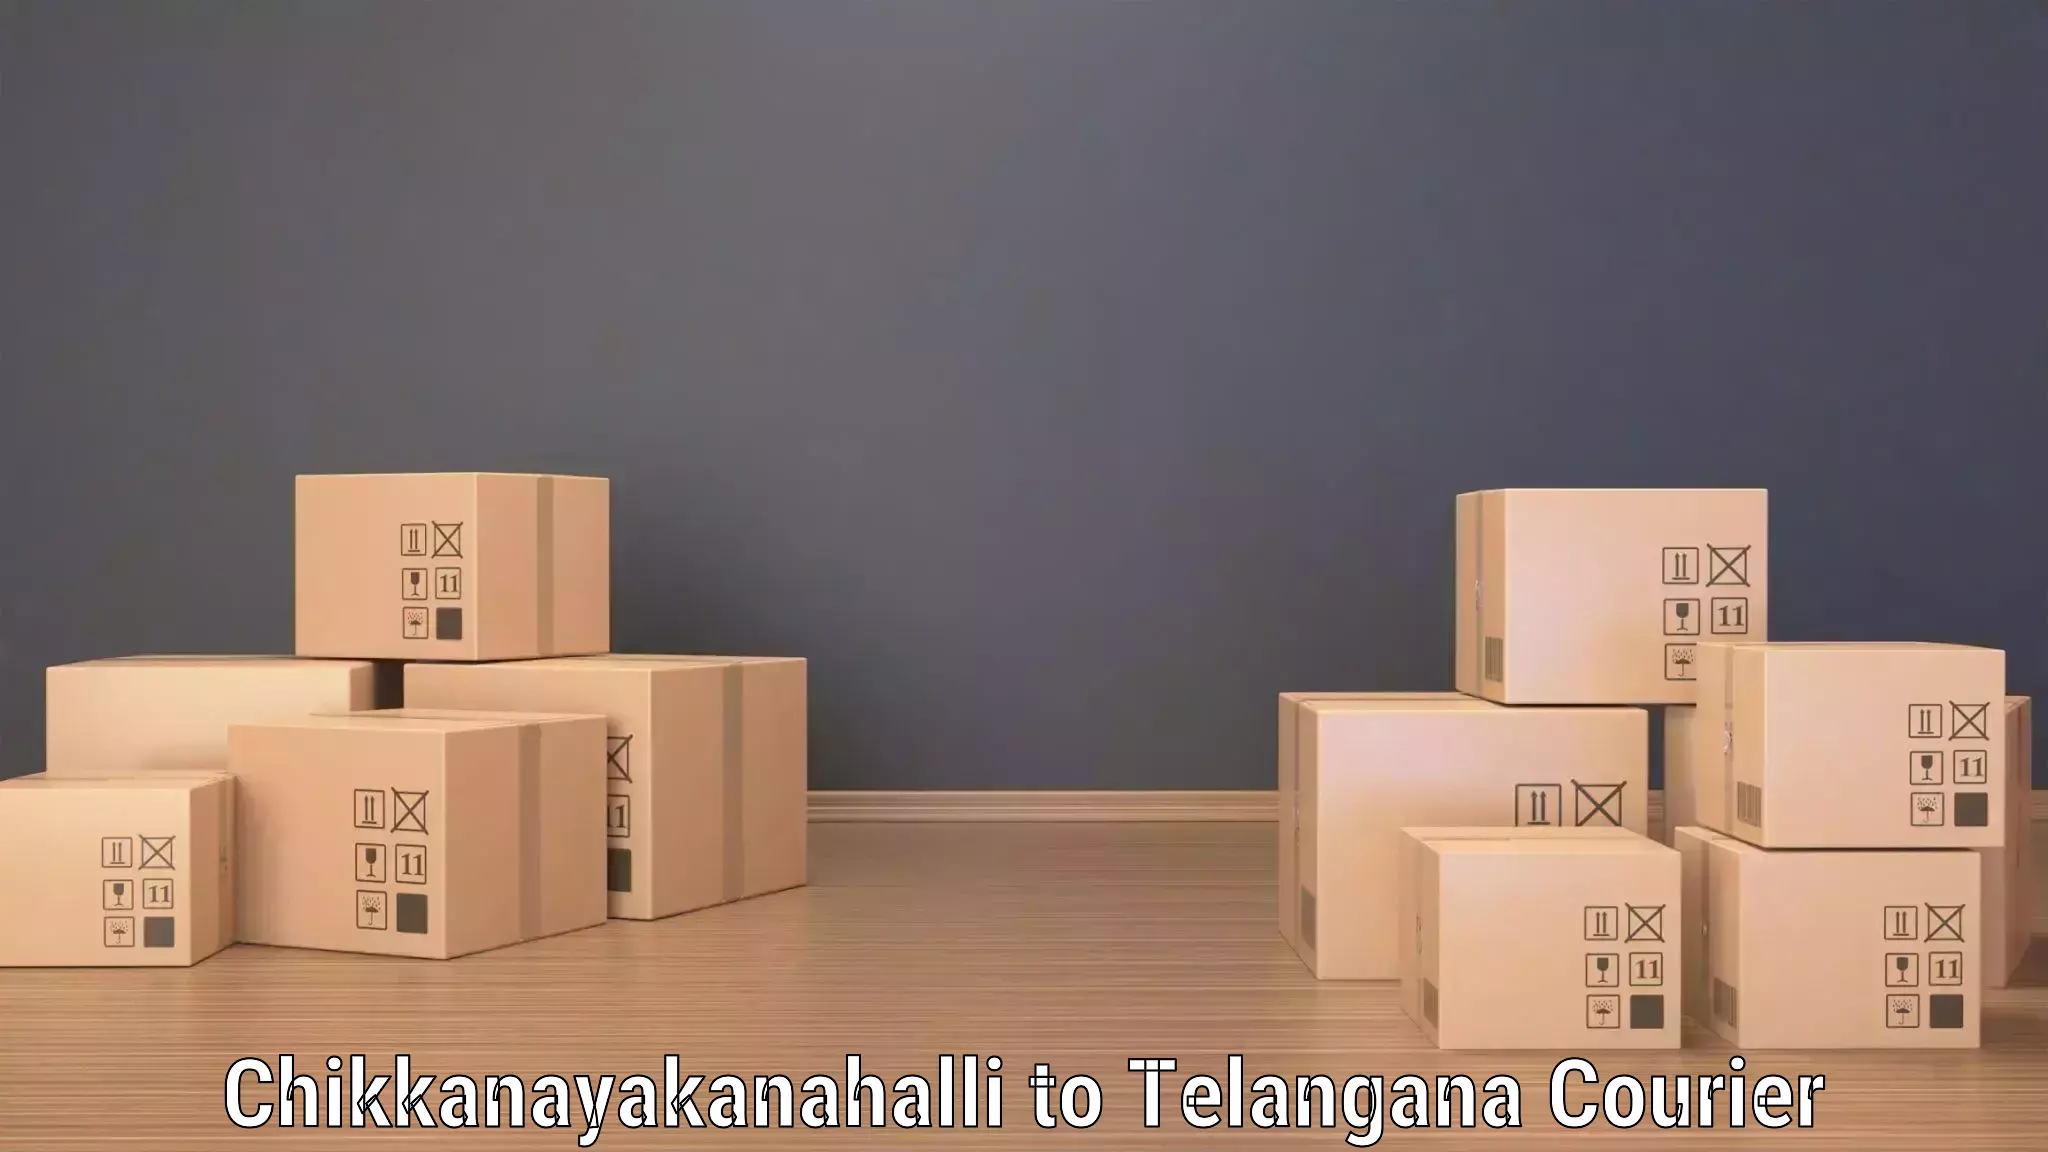 International courier networks Chikkanayakanahalli to Madgulapally